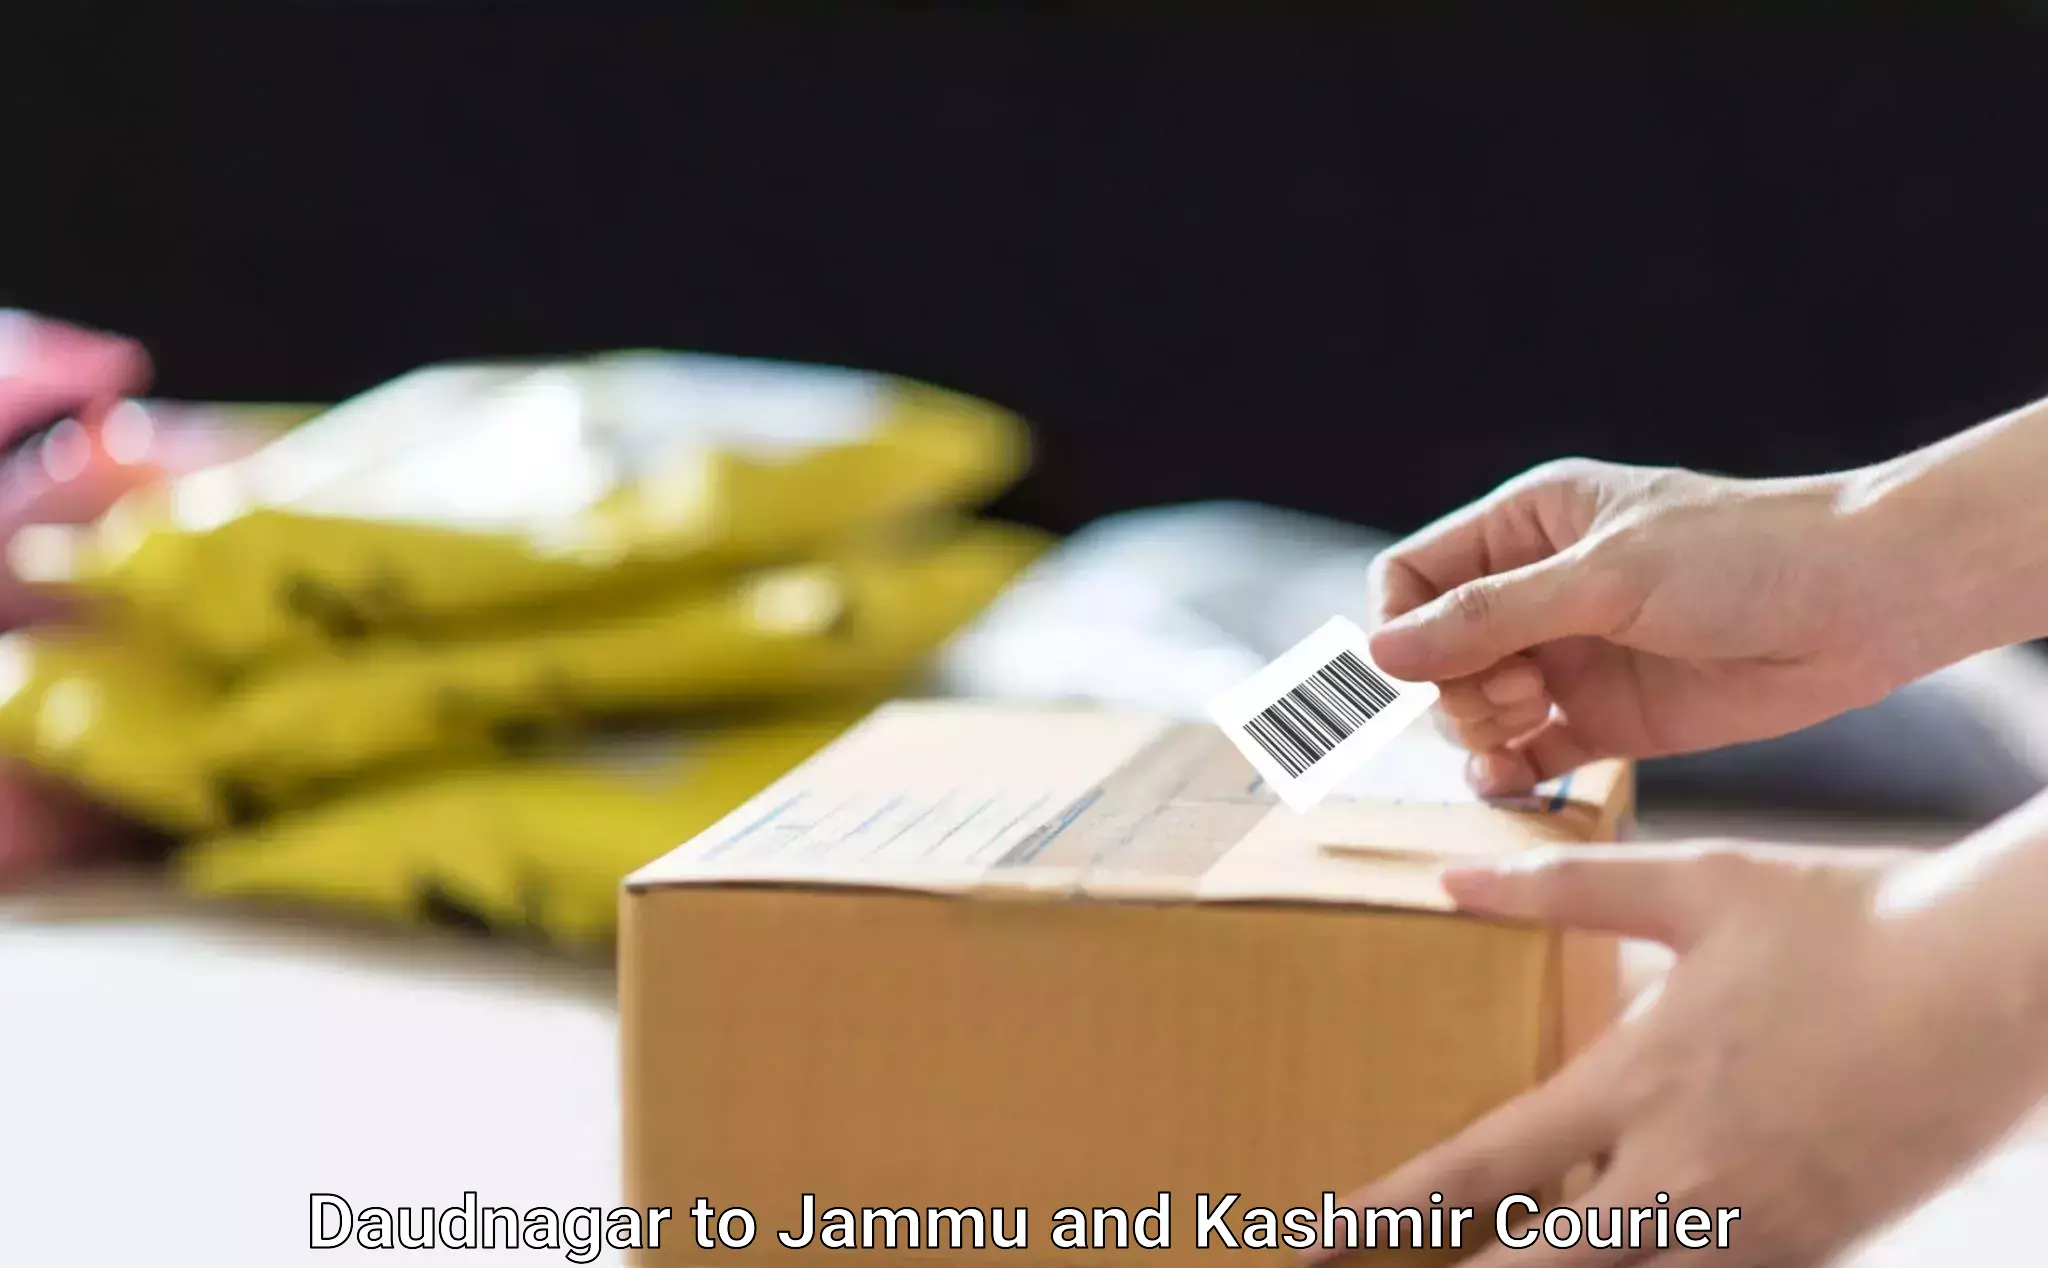 Home furniture relocation Daudnagar to Jammu